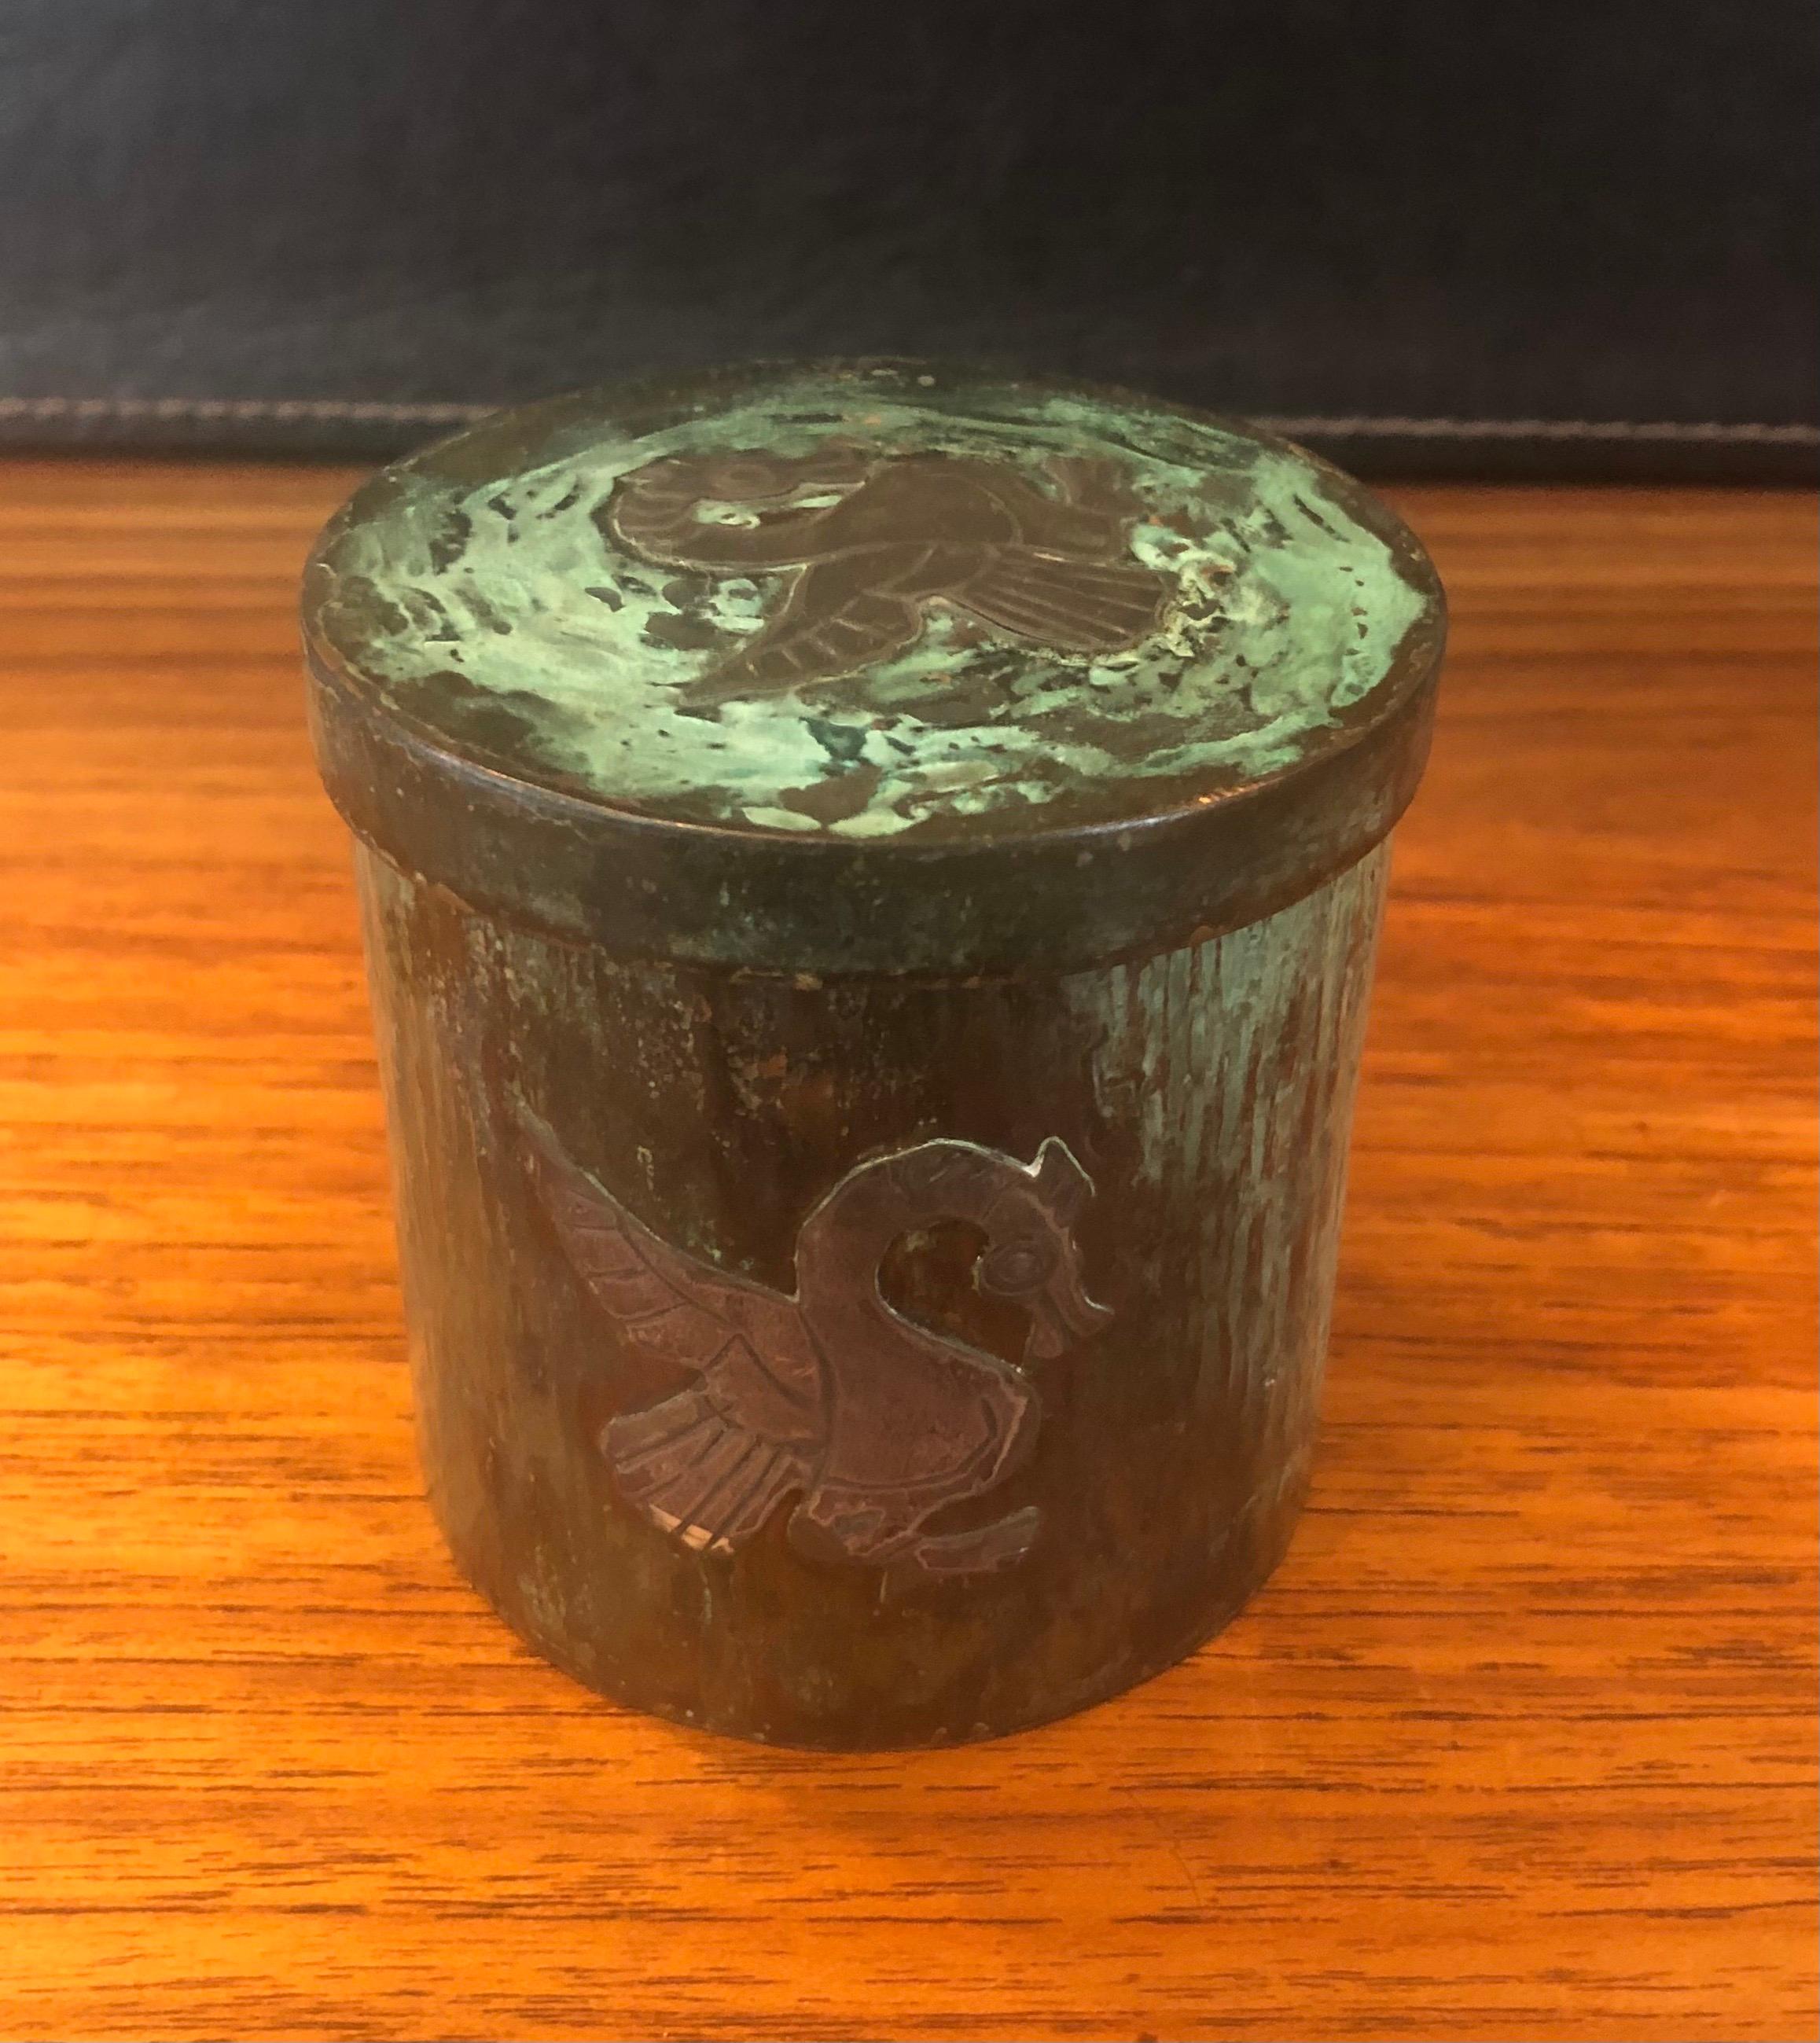 Eine sehr coole runde Schmuckdose aus Grünspan-Kupfer mit Drachenmotiv auf der Vorderseite und der Oberseite des Deckels. Die Schachtel ist in sehr gutem Zustand und misst 3,125 